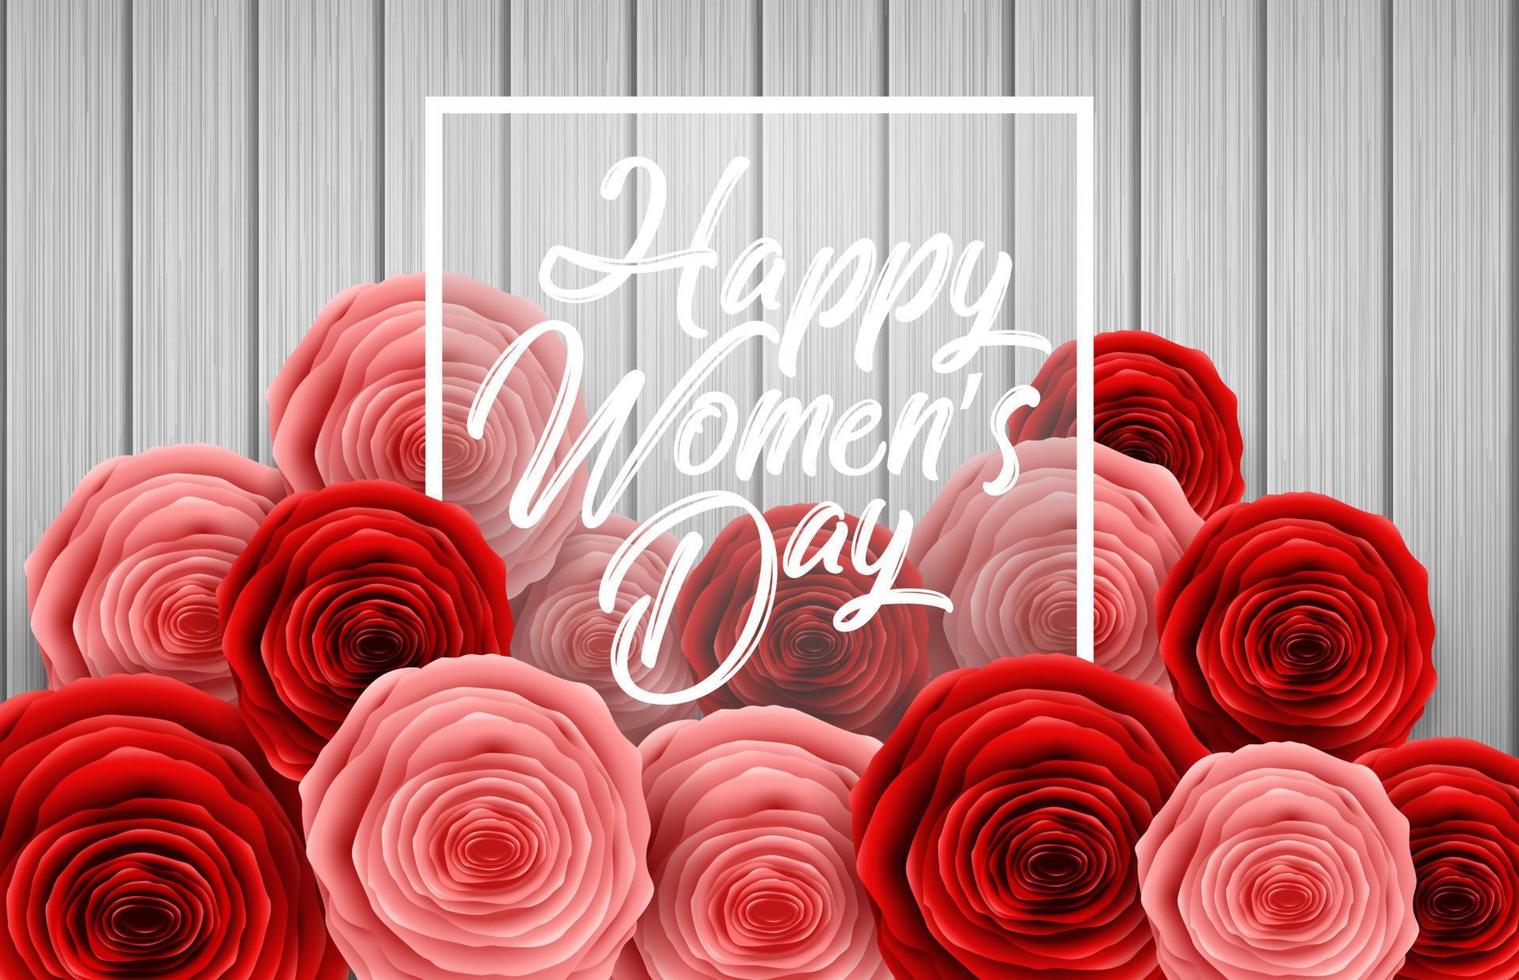 feliz dia internacional da mulher com borboletas de corte de papel, flores rosas e placa redonda preta sobre fundo de madeira vetor